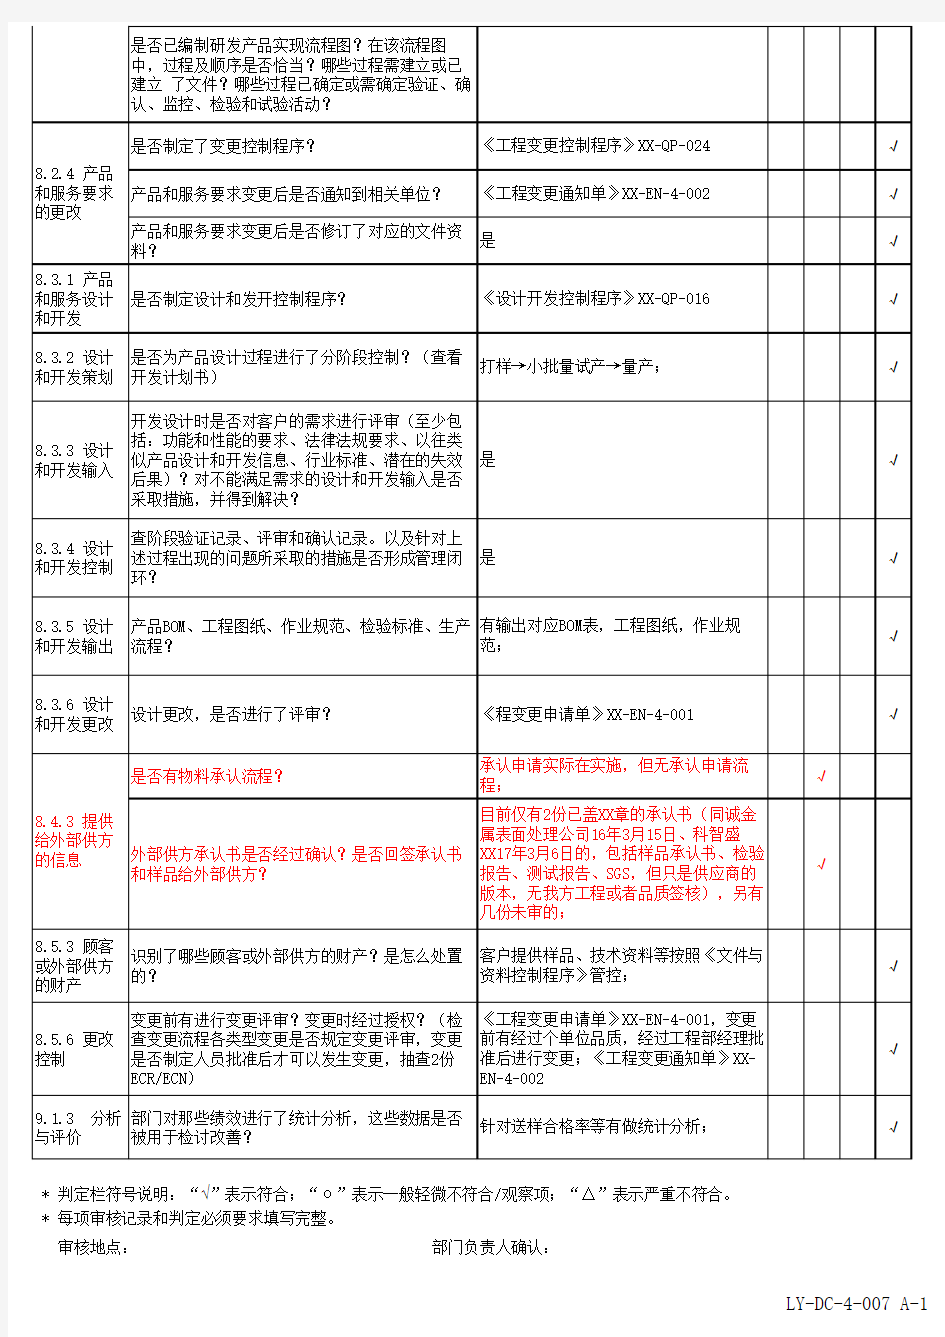 内部审核检查表-ISO19001-2015(工程部)